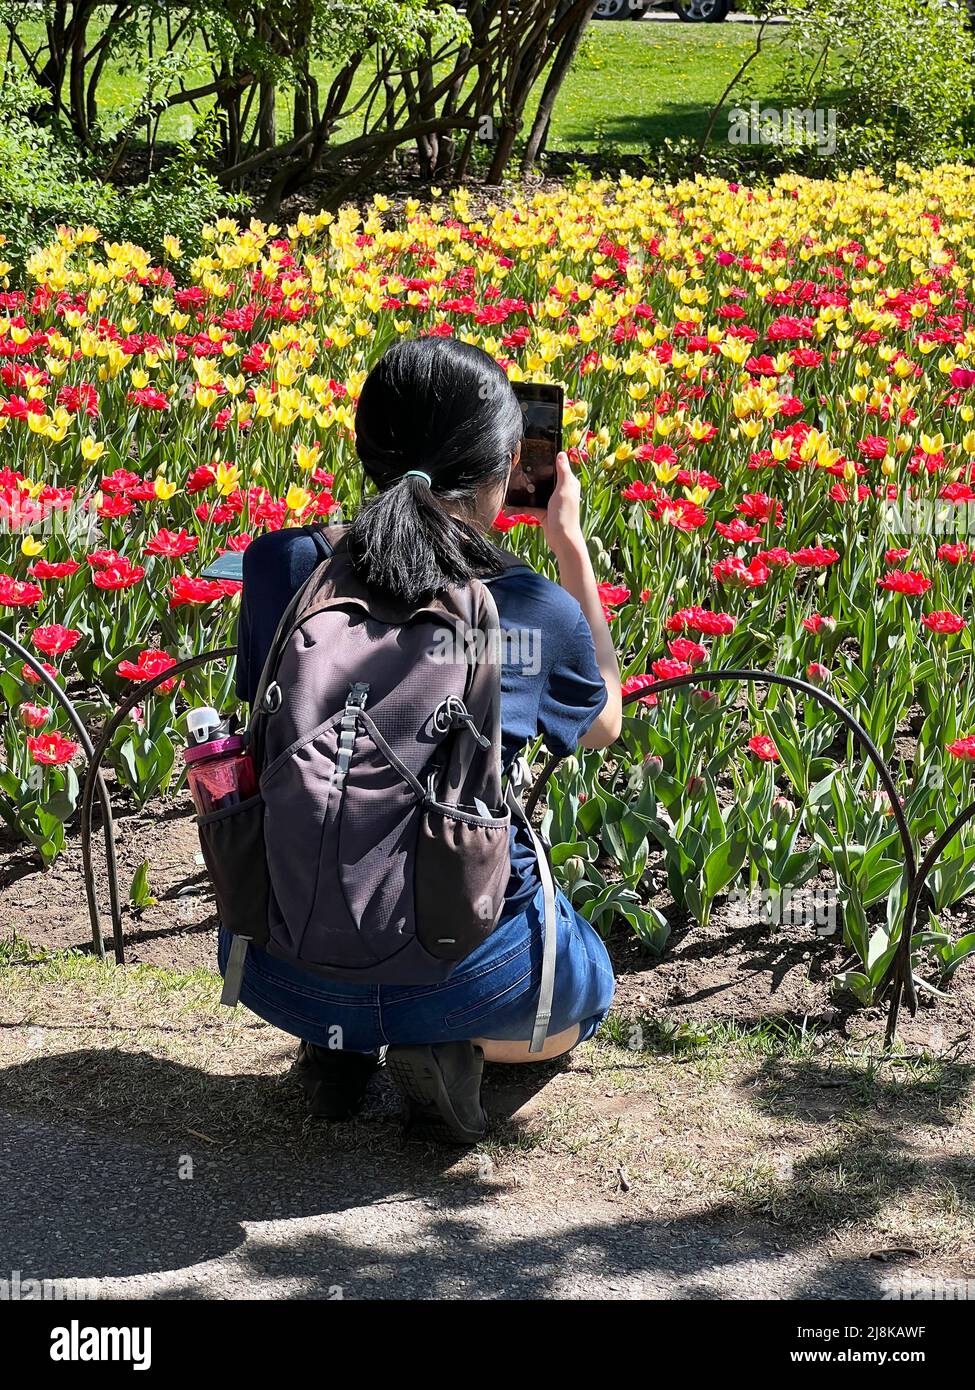 Ein Fotograf nimmt ein Bild auf dem Ottawa Tulip Festival in Ontario, Kanada, auf. Stockfoto